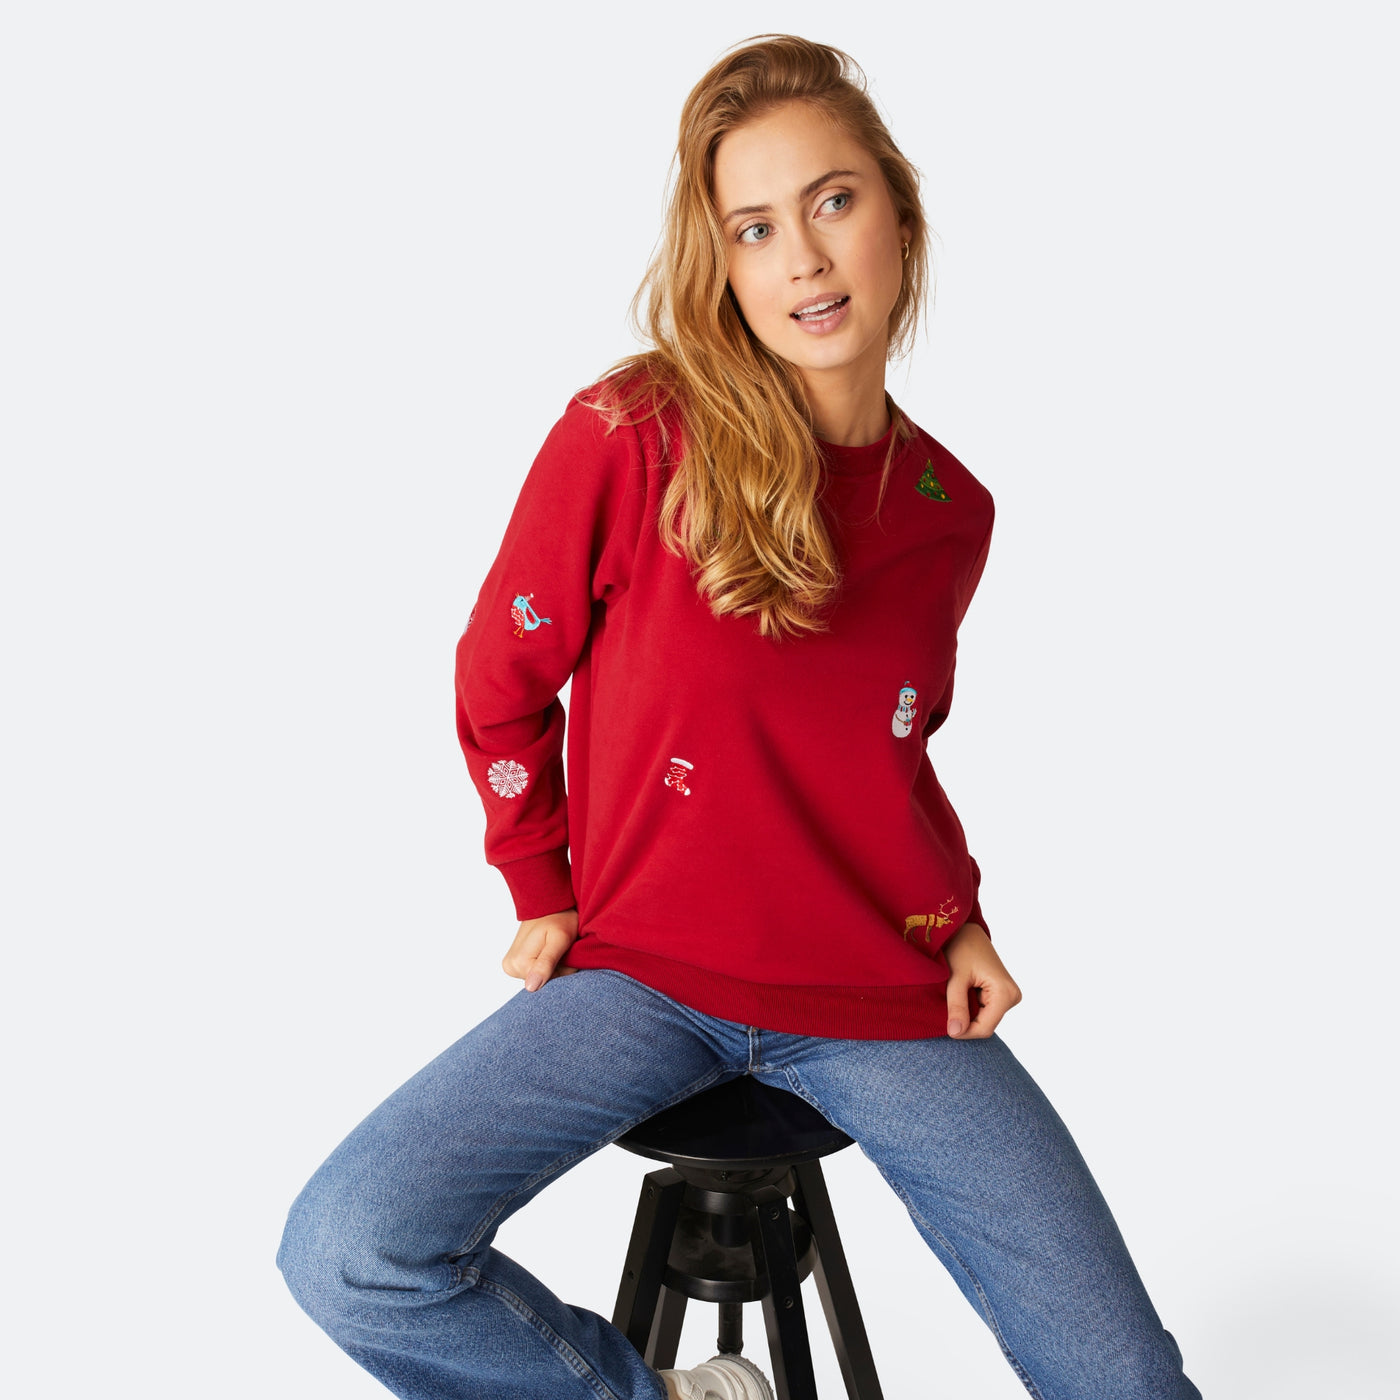 Women's Red Christmas Sweatshirt